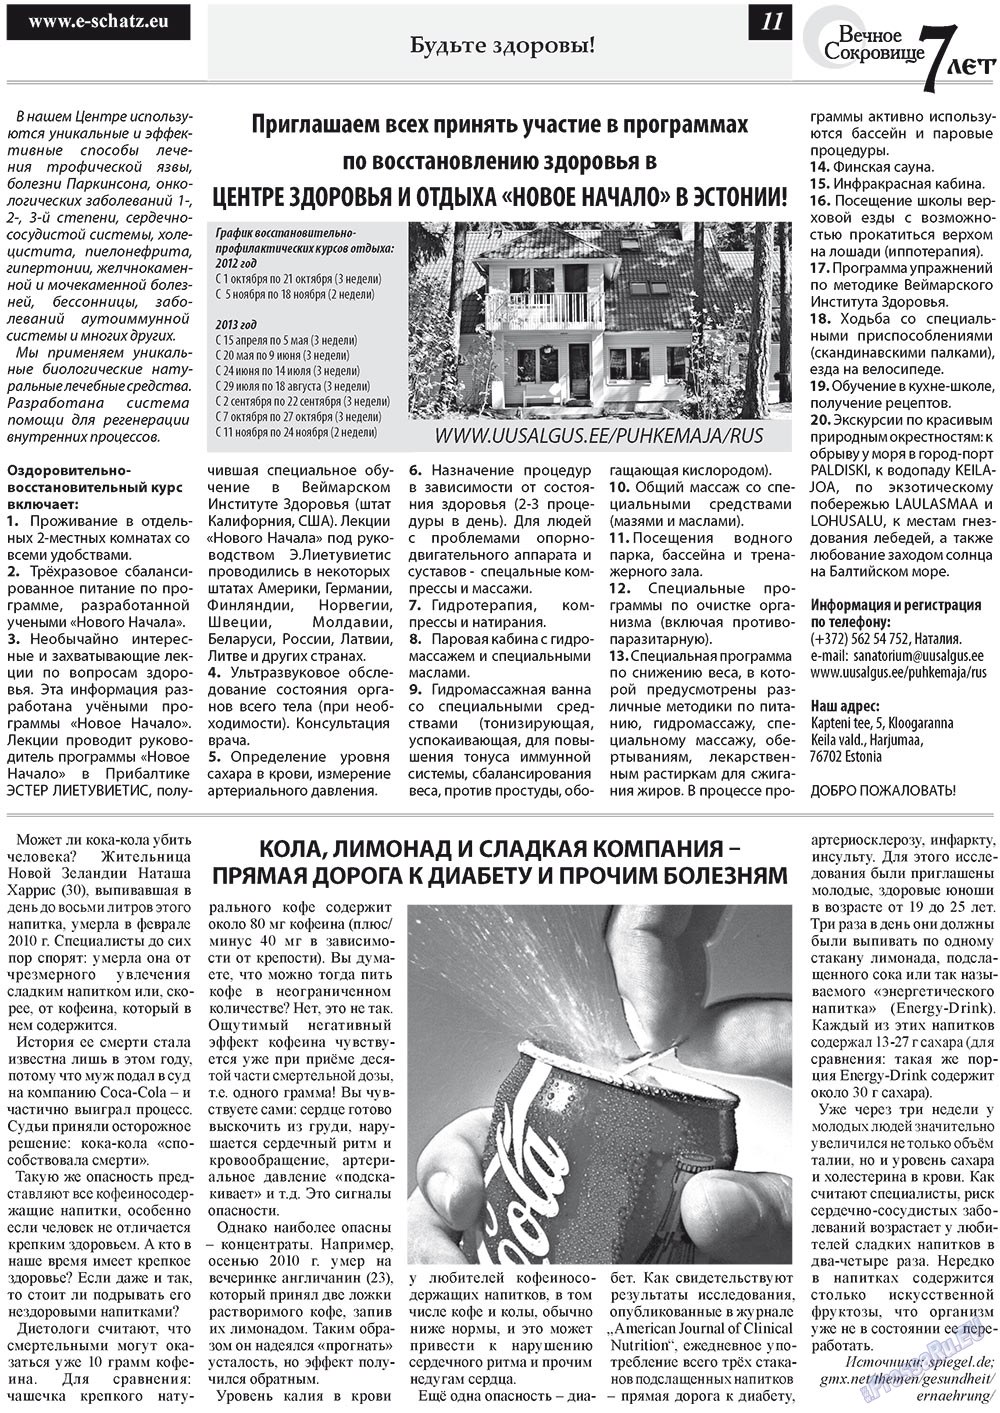 Вечное сокровище (газета). 2012 год, номер 5, стр. 11